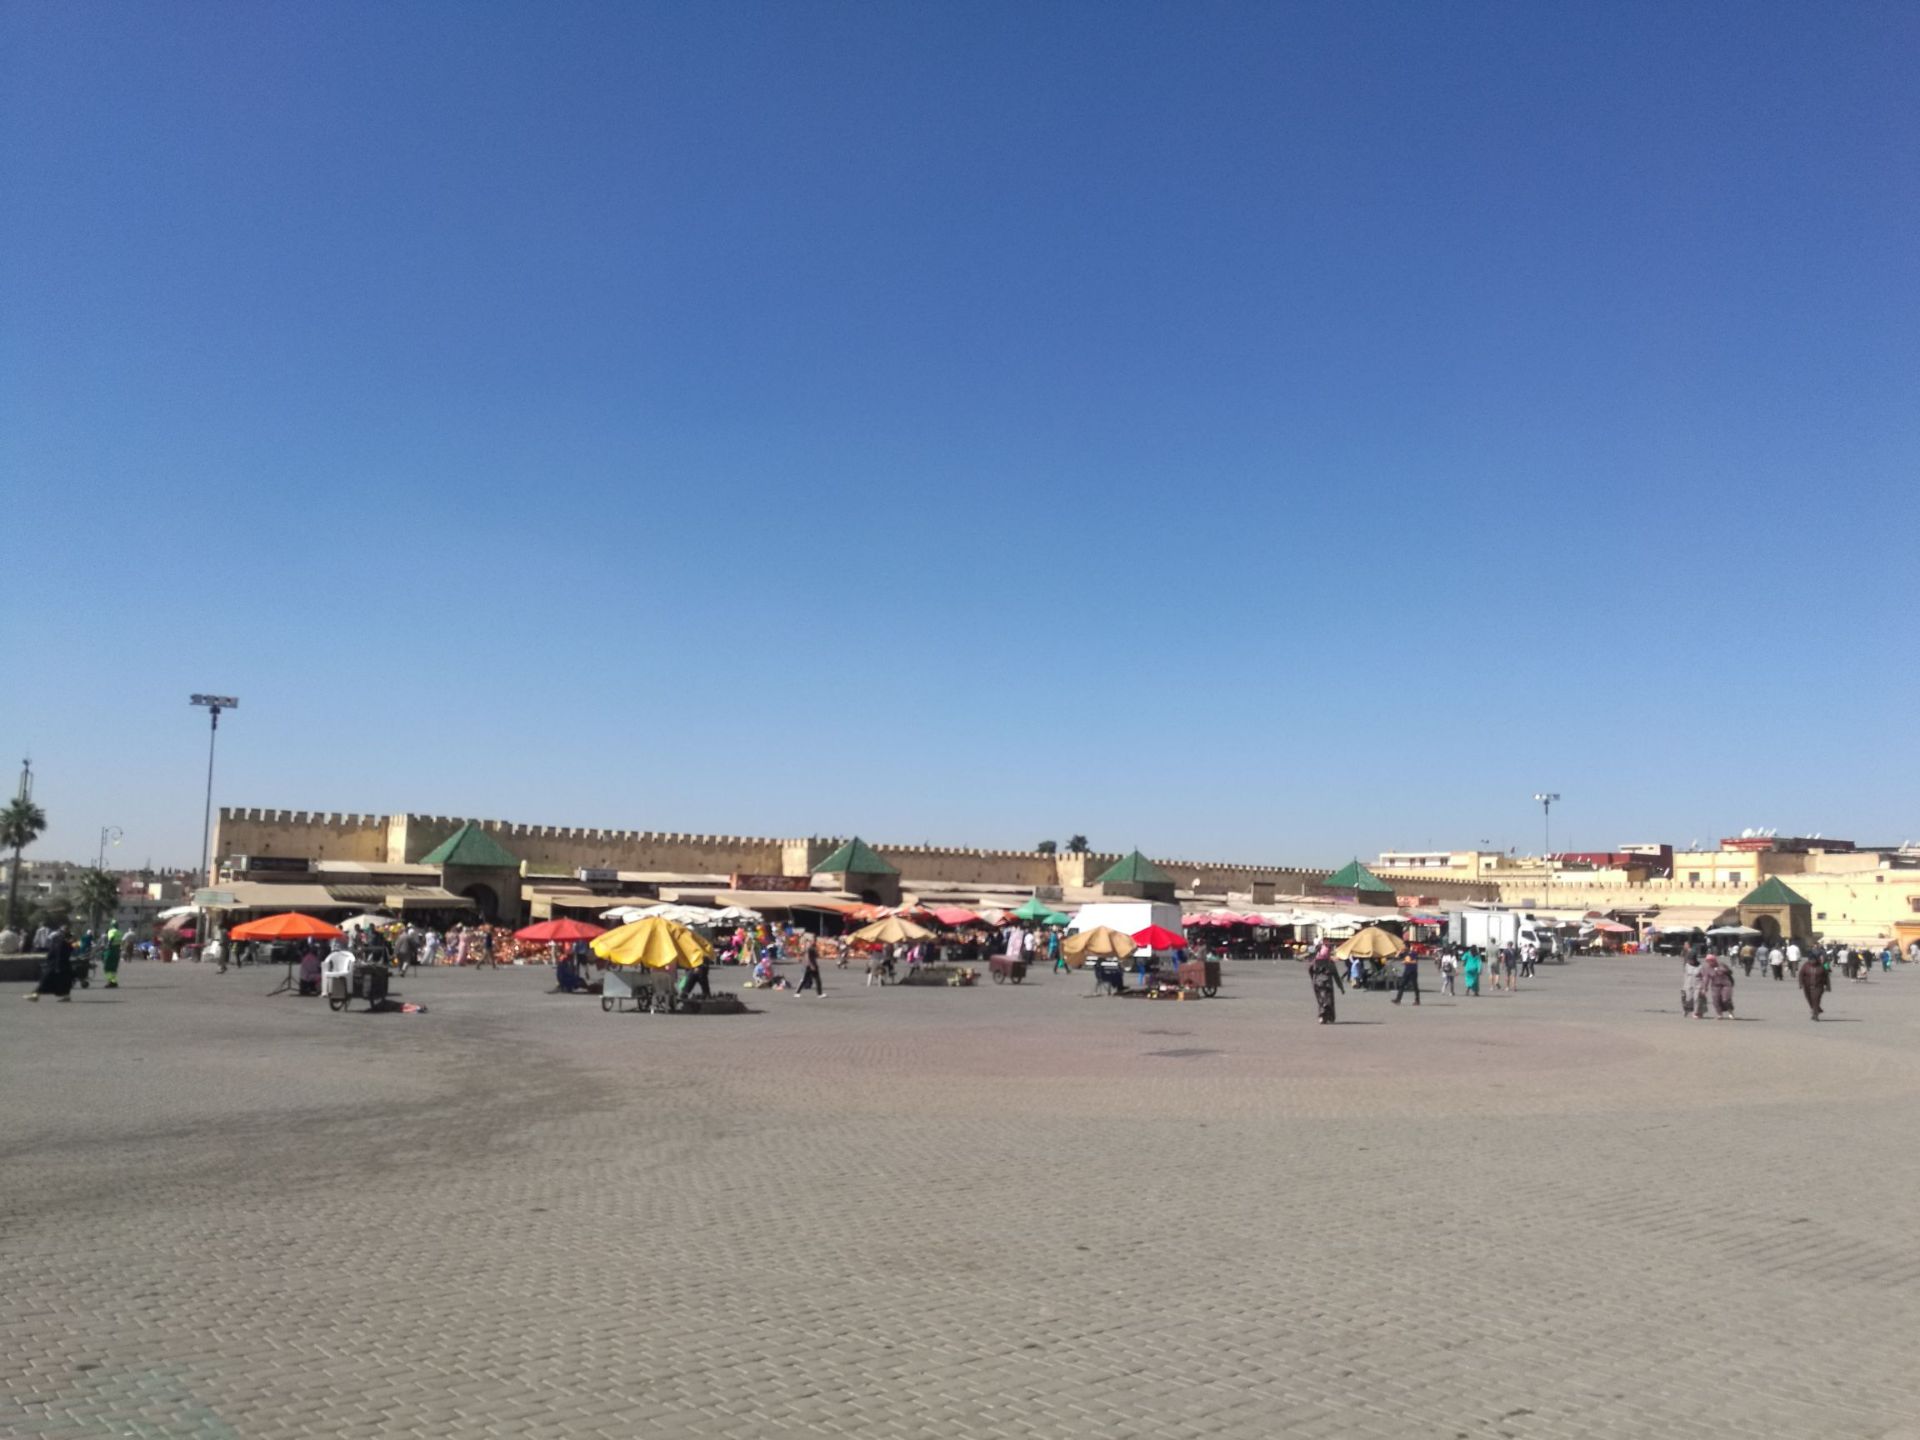 梅内克斯，摩洛哥的首都，麦地那就是摩洛哥人民的老城的意思，有一个很大的广场，到处都是买卖商品的小贩们